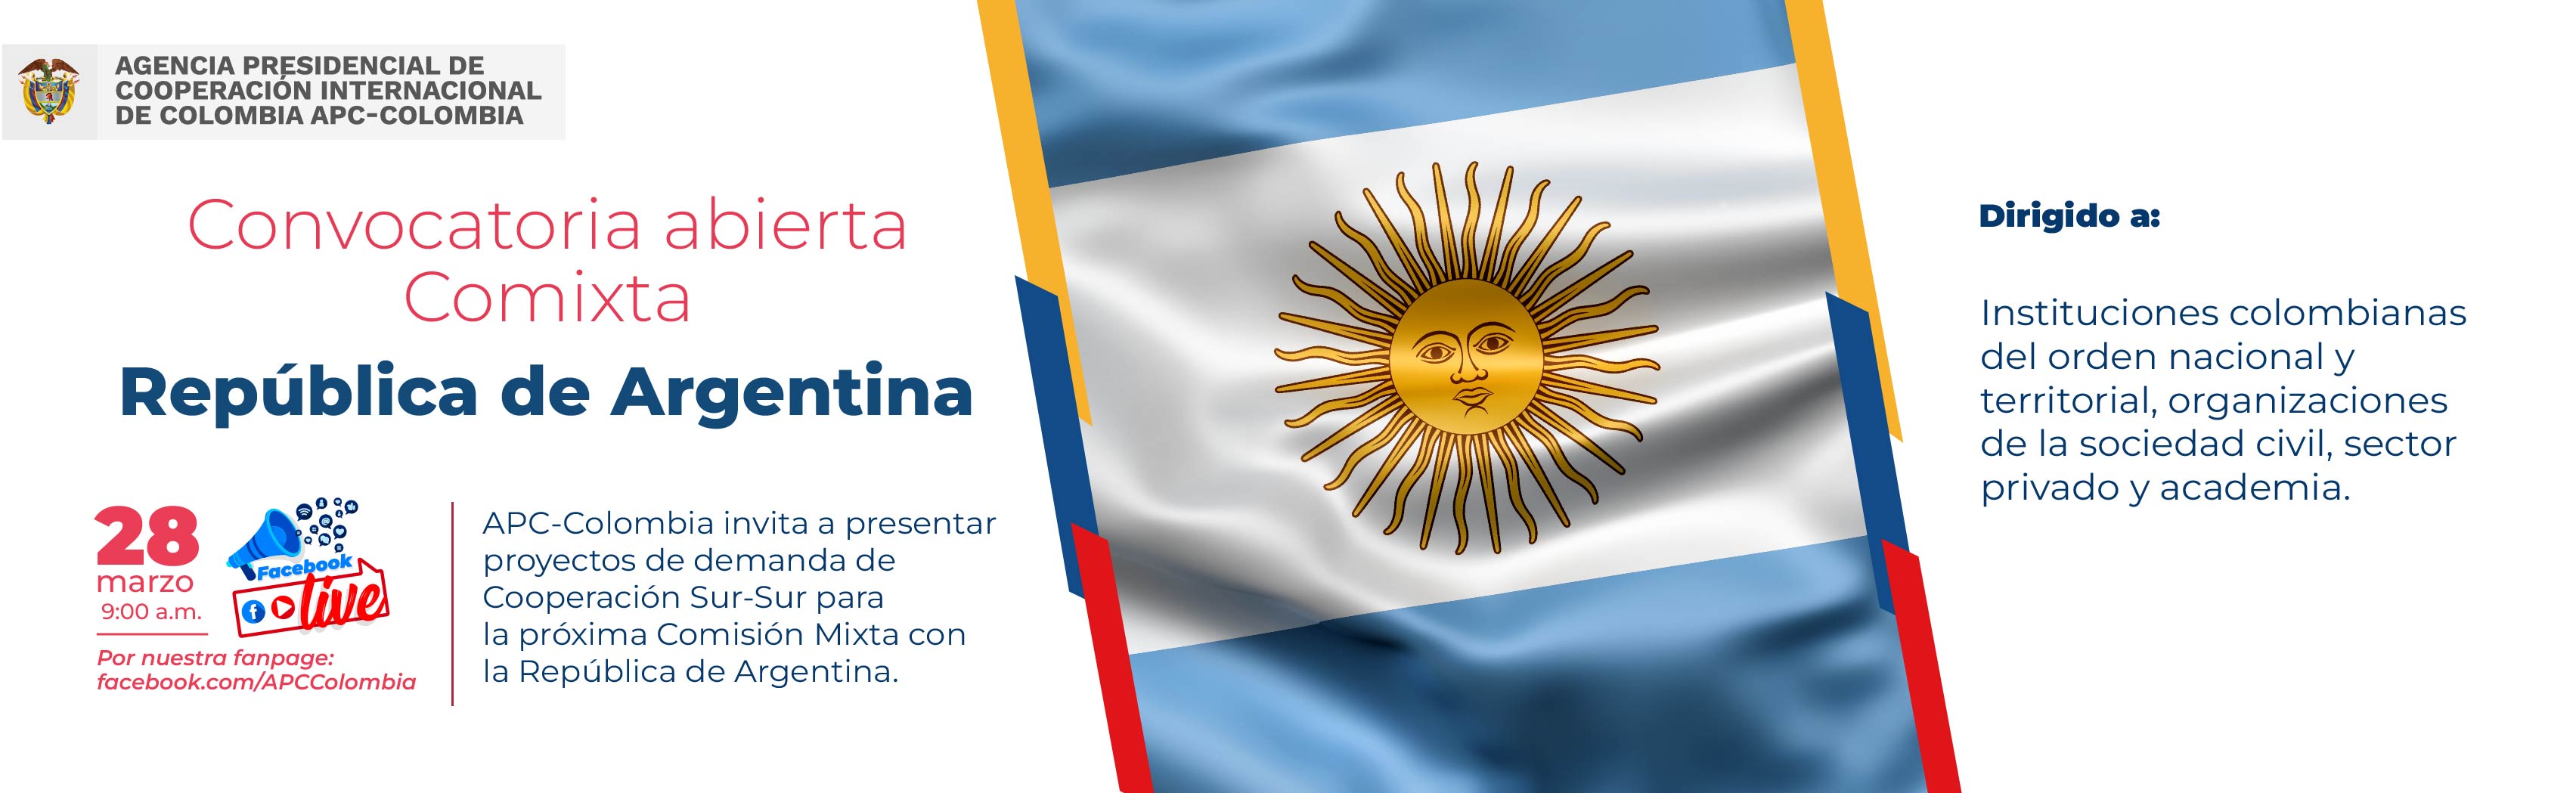 Convocatoria abierta Comixta entre Colombia y Argentina Fabook Live 28 de marzo a las 09:00 a.m.